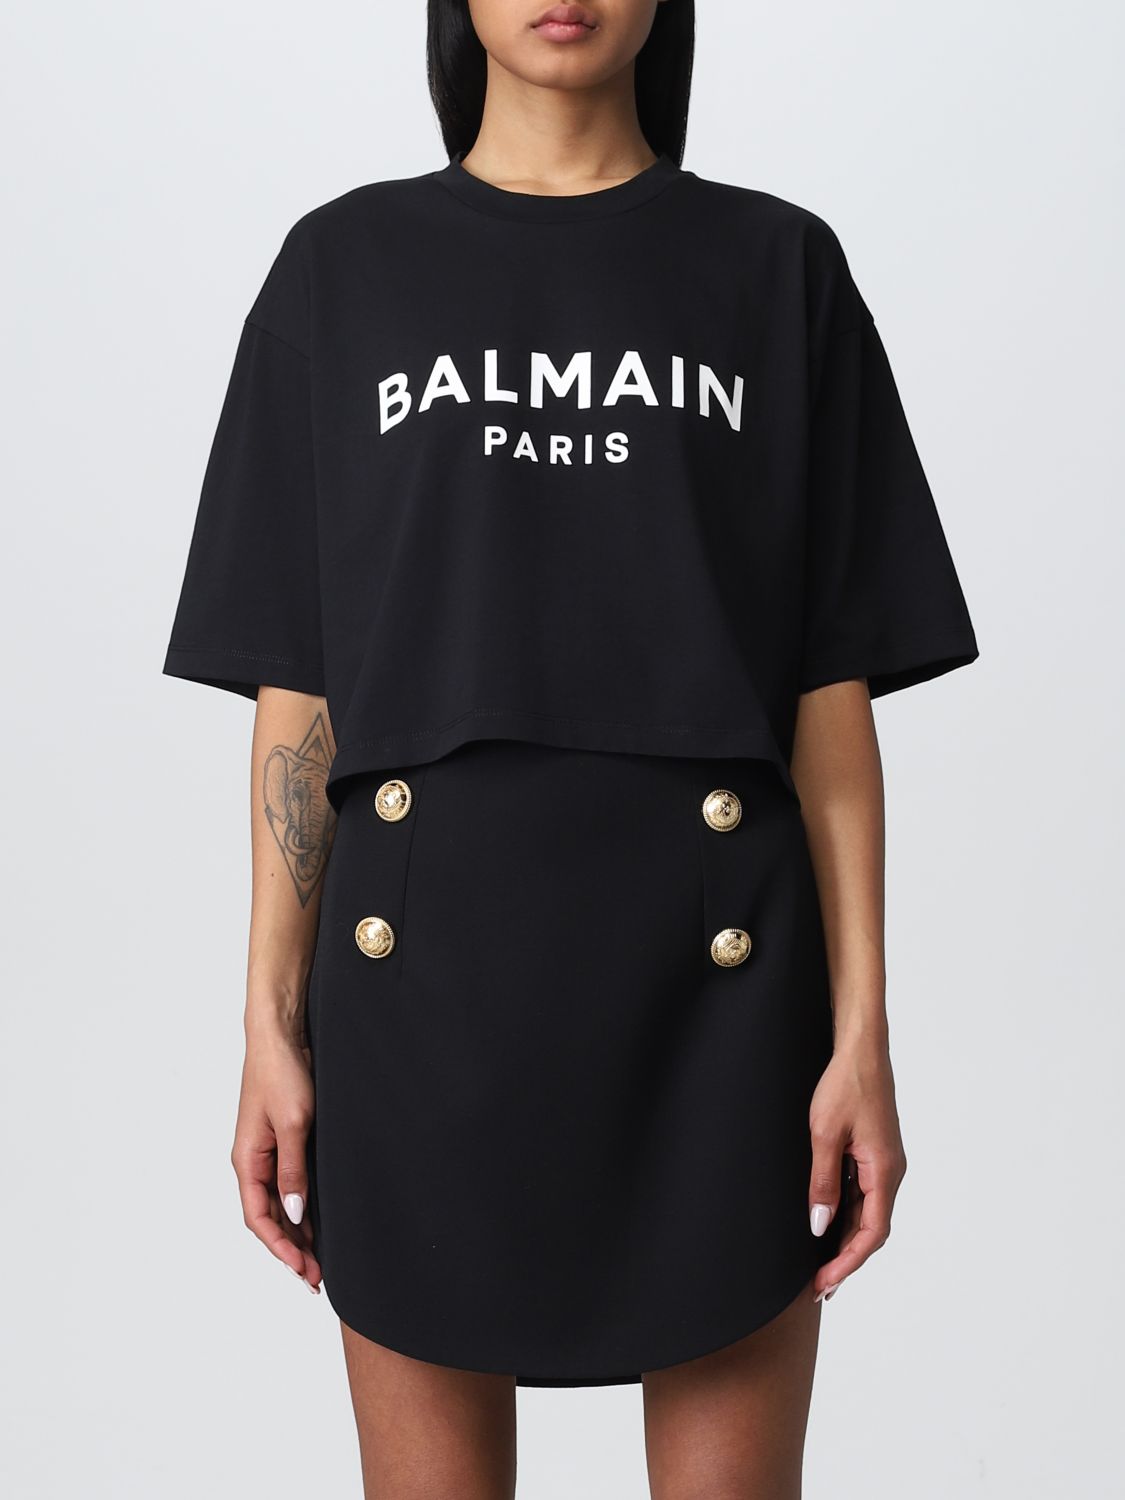 Balmain T-shirt Women  In Black